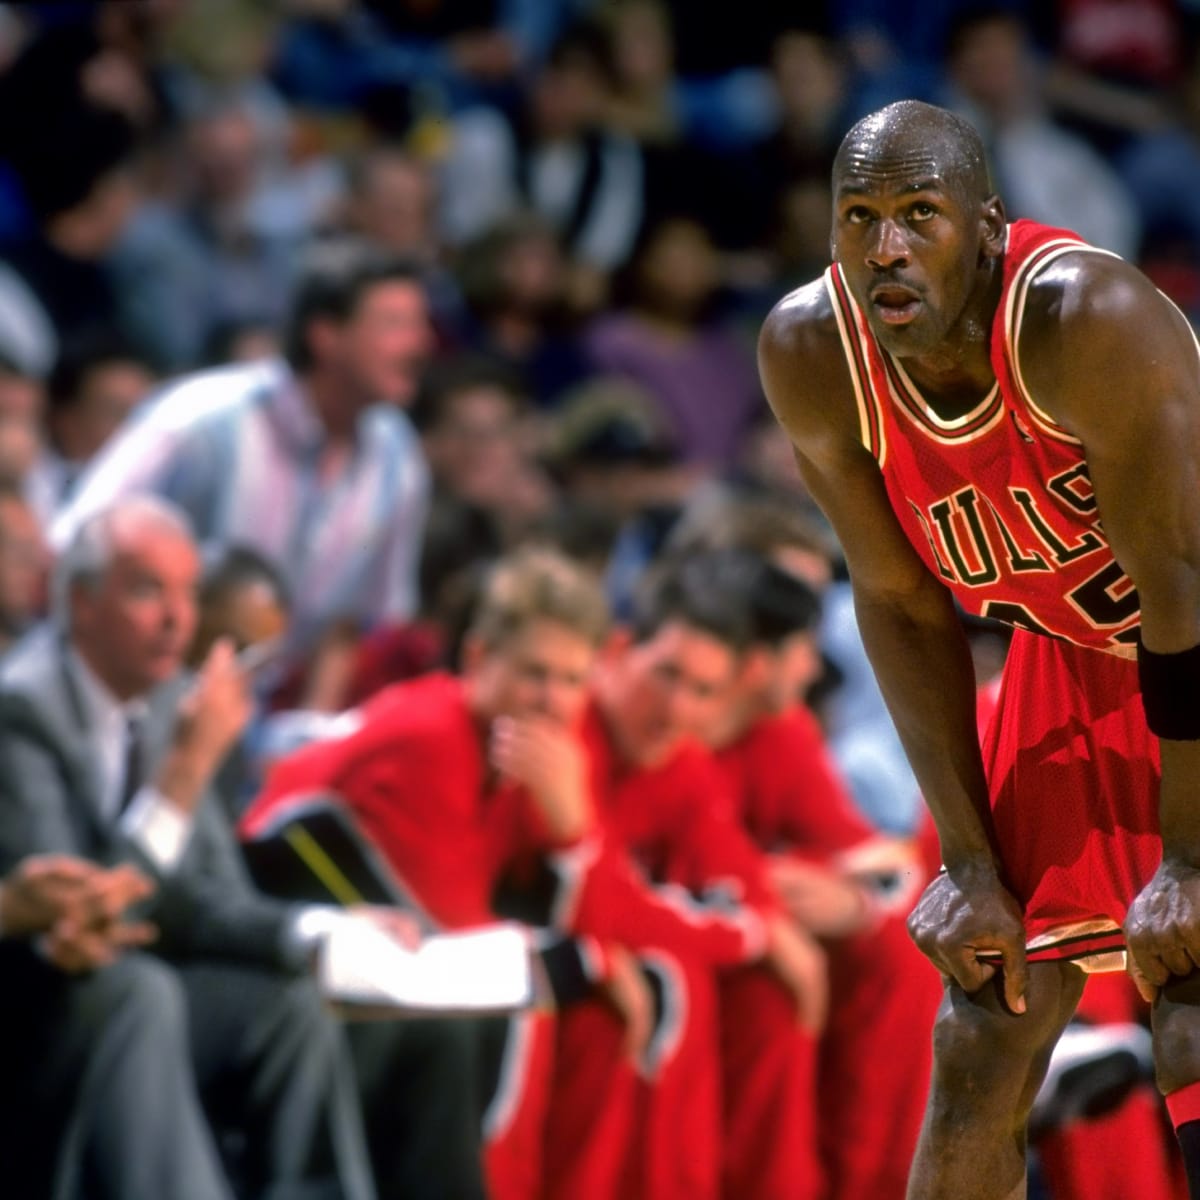 Michael Jordan: Remembering his return after his first retirement